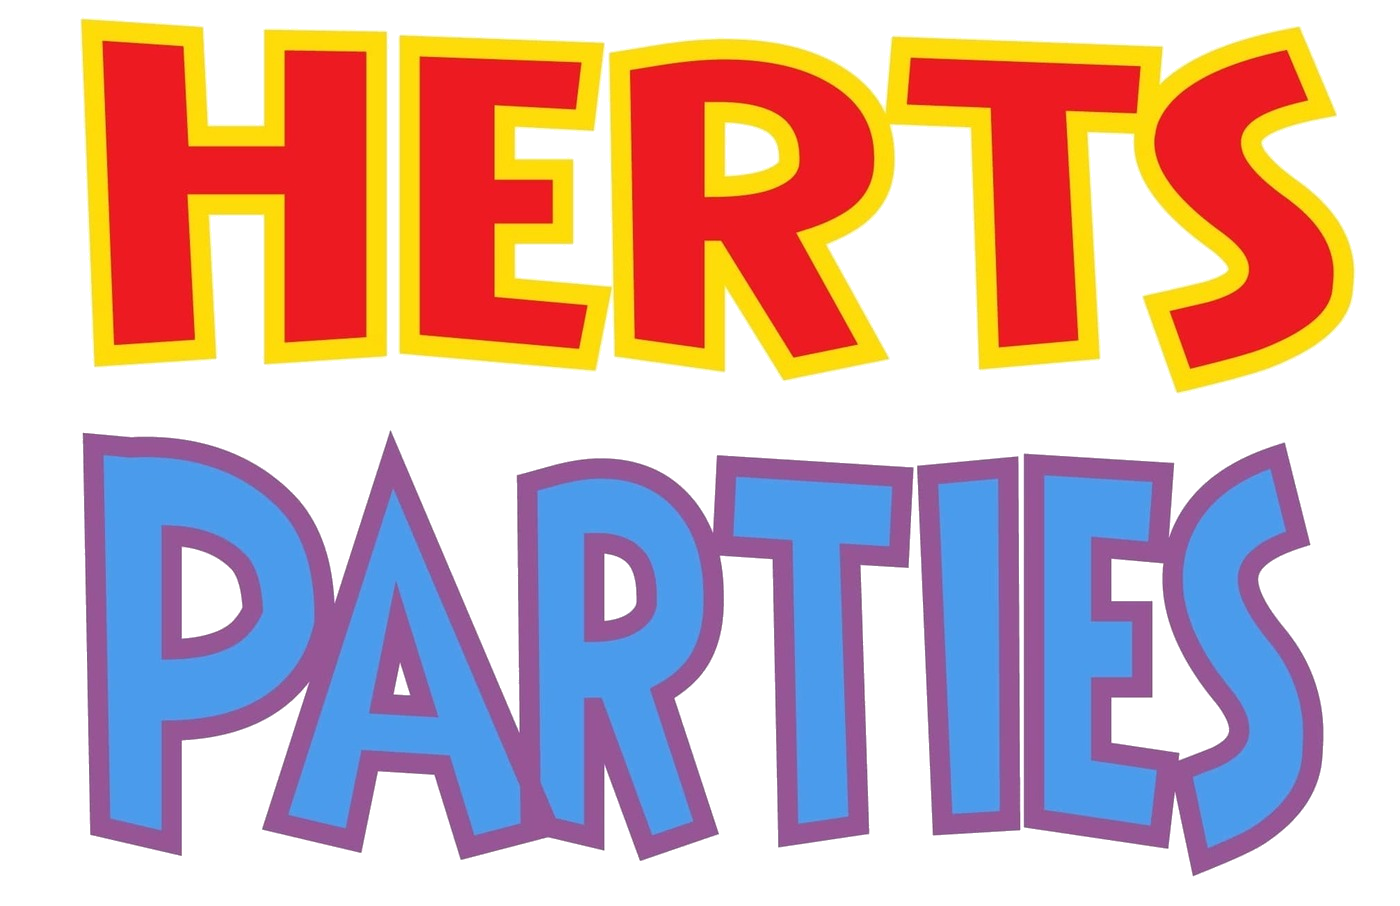 Herts Parties